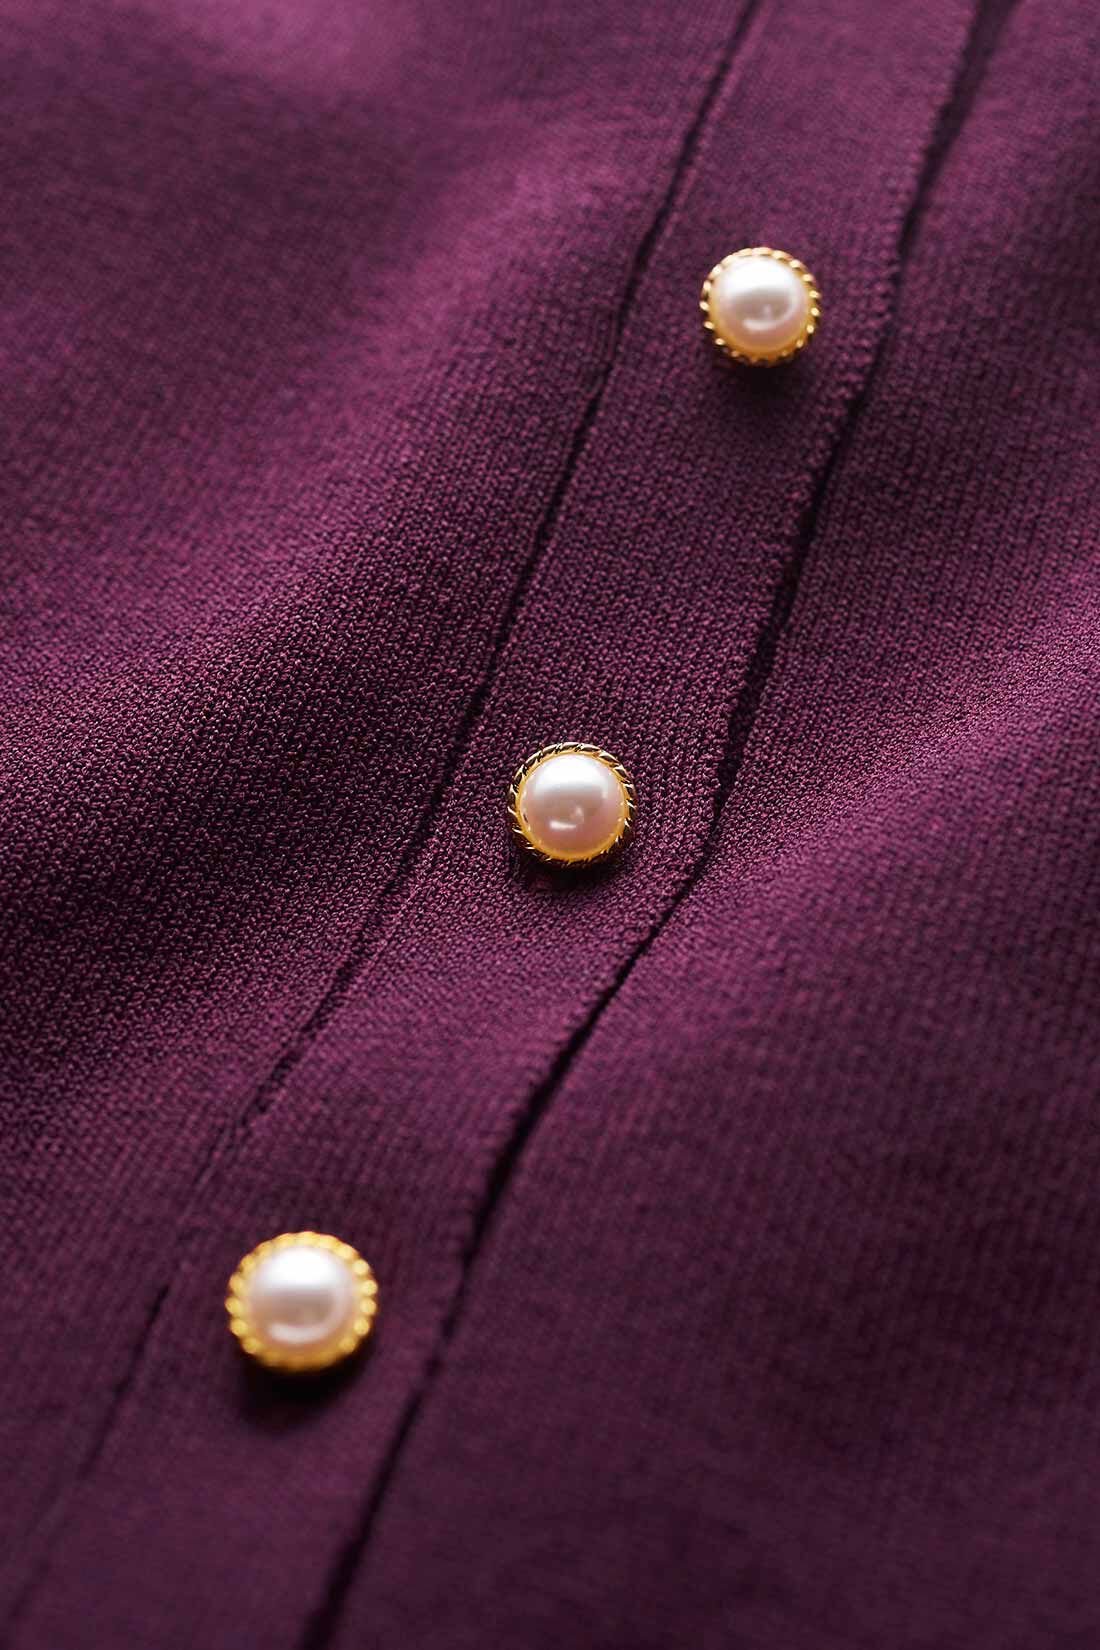 イディット|IEDIT[イディット]　パールボタンが上品な袖プリーツ風カーディガン〈ネイビー〉|晩夏から心地よく着られる、シャリ感のあるレーヨン混素材を使用。